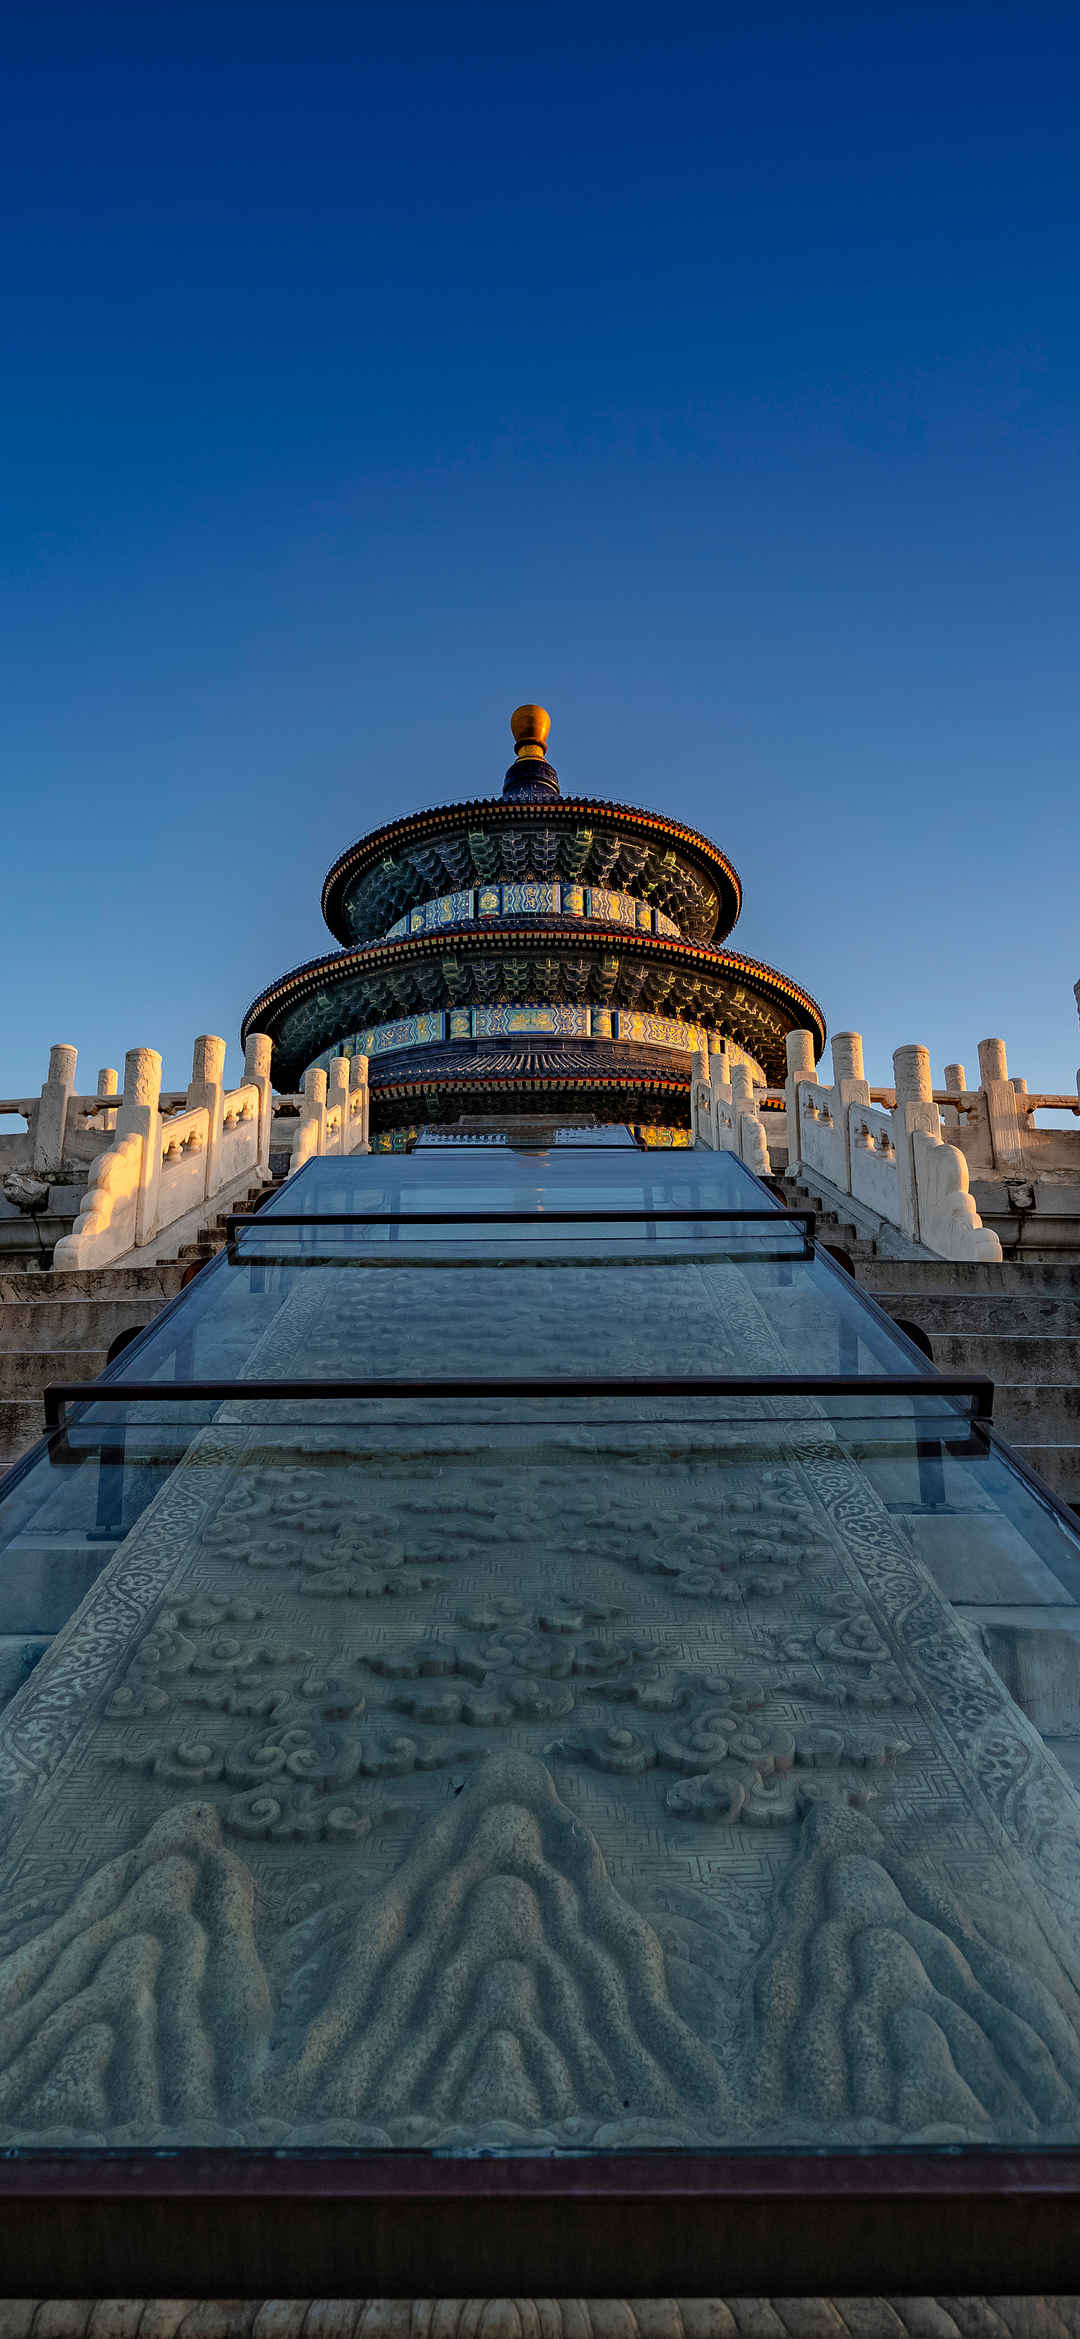 北京故宫天坛风景壁纸-